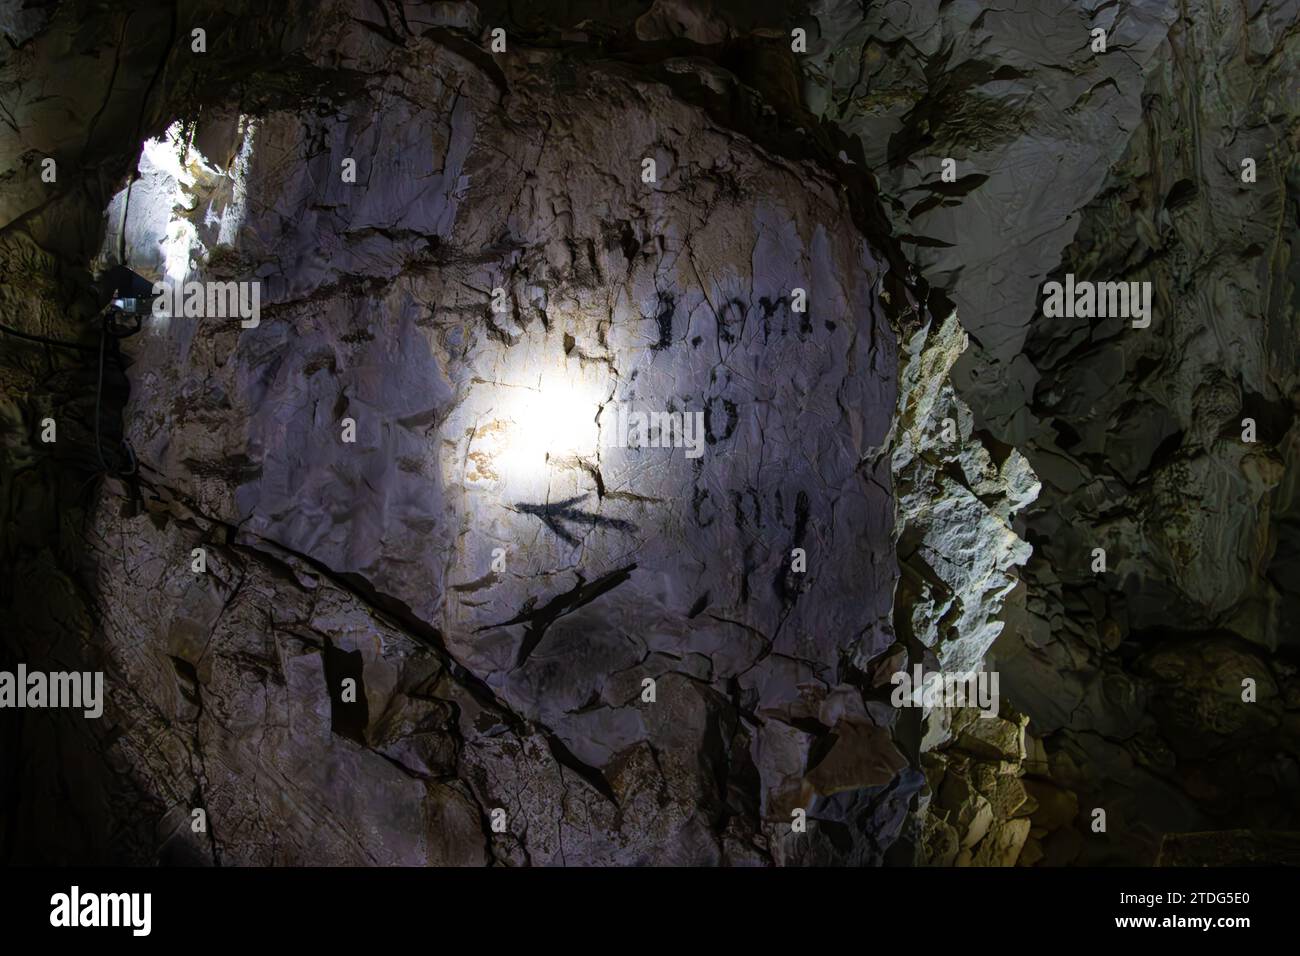 Die Meziad-Höhle. Eine der schönsten Höhlen Rumäniens, die Meziad-Höhle ähnelt einer unterirdischen gotischen Kathedrale. Stockfoto